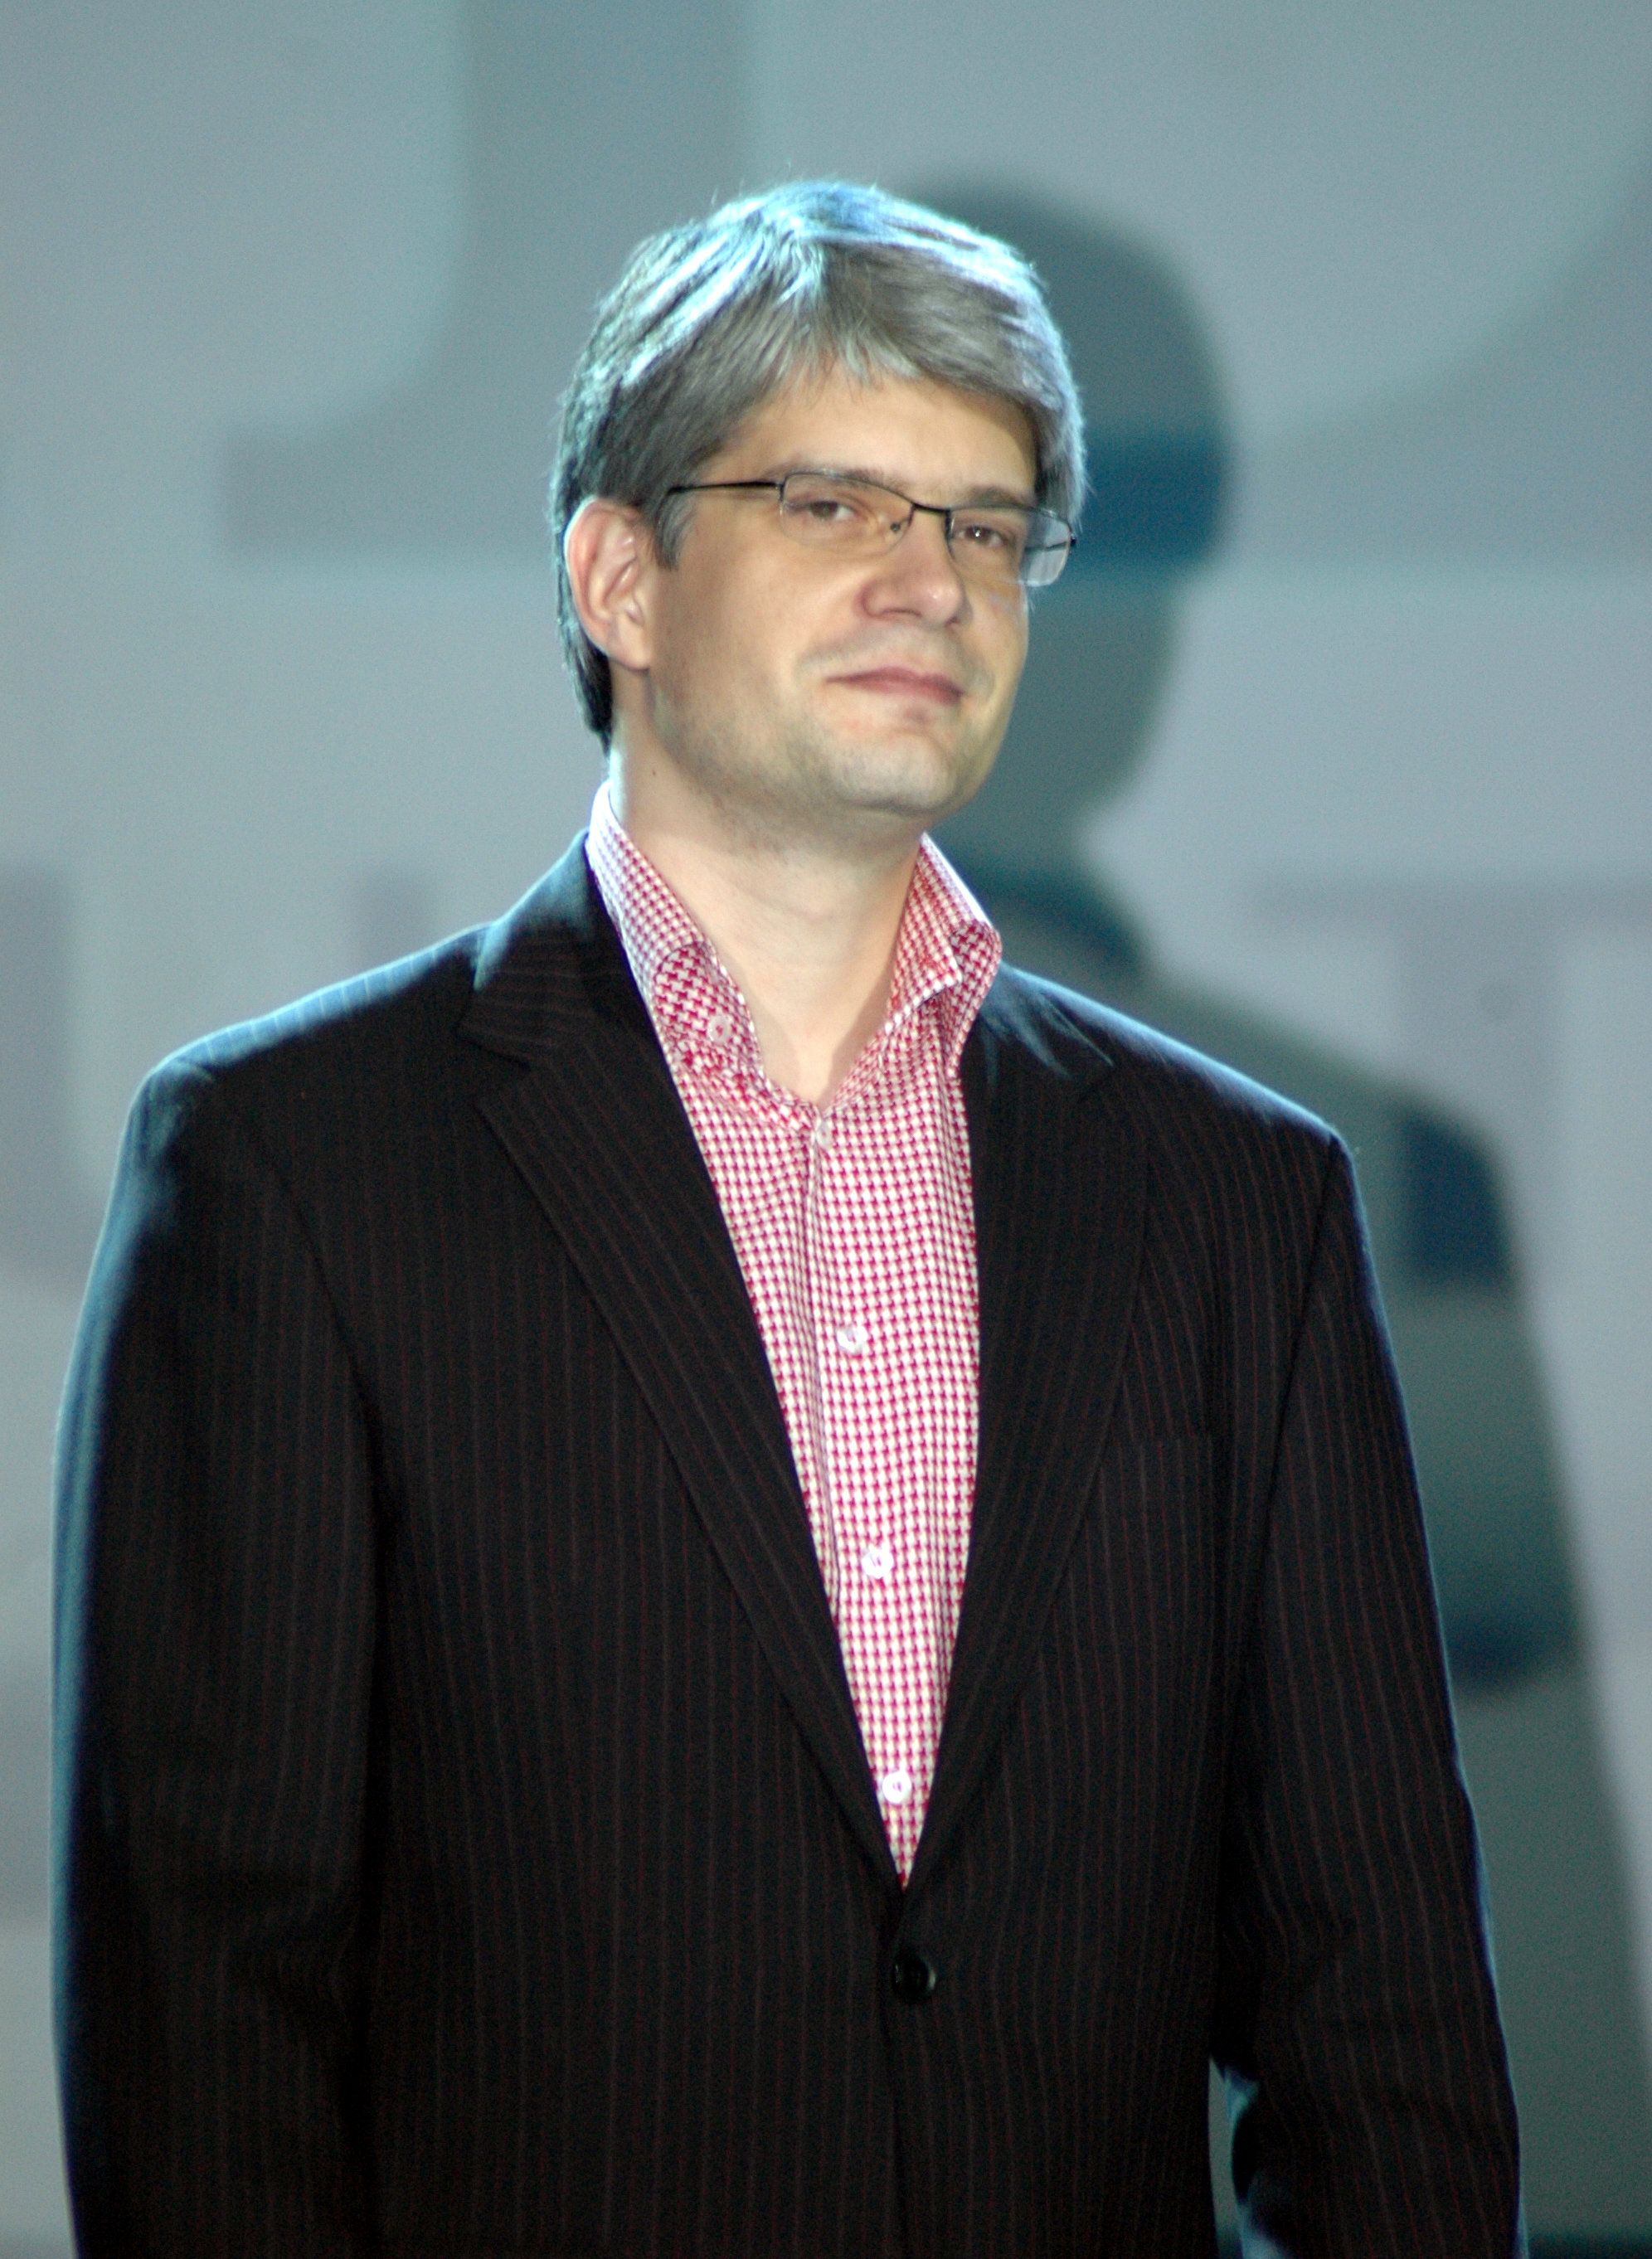 Piotr Gembarowski